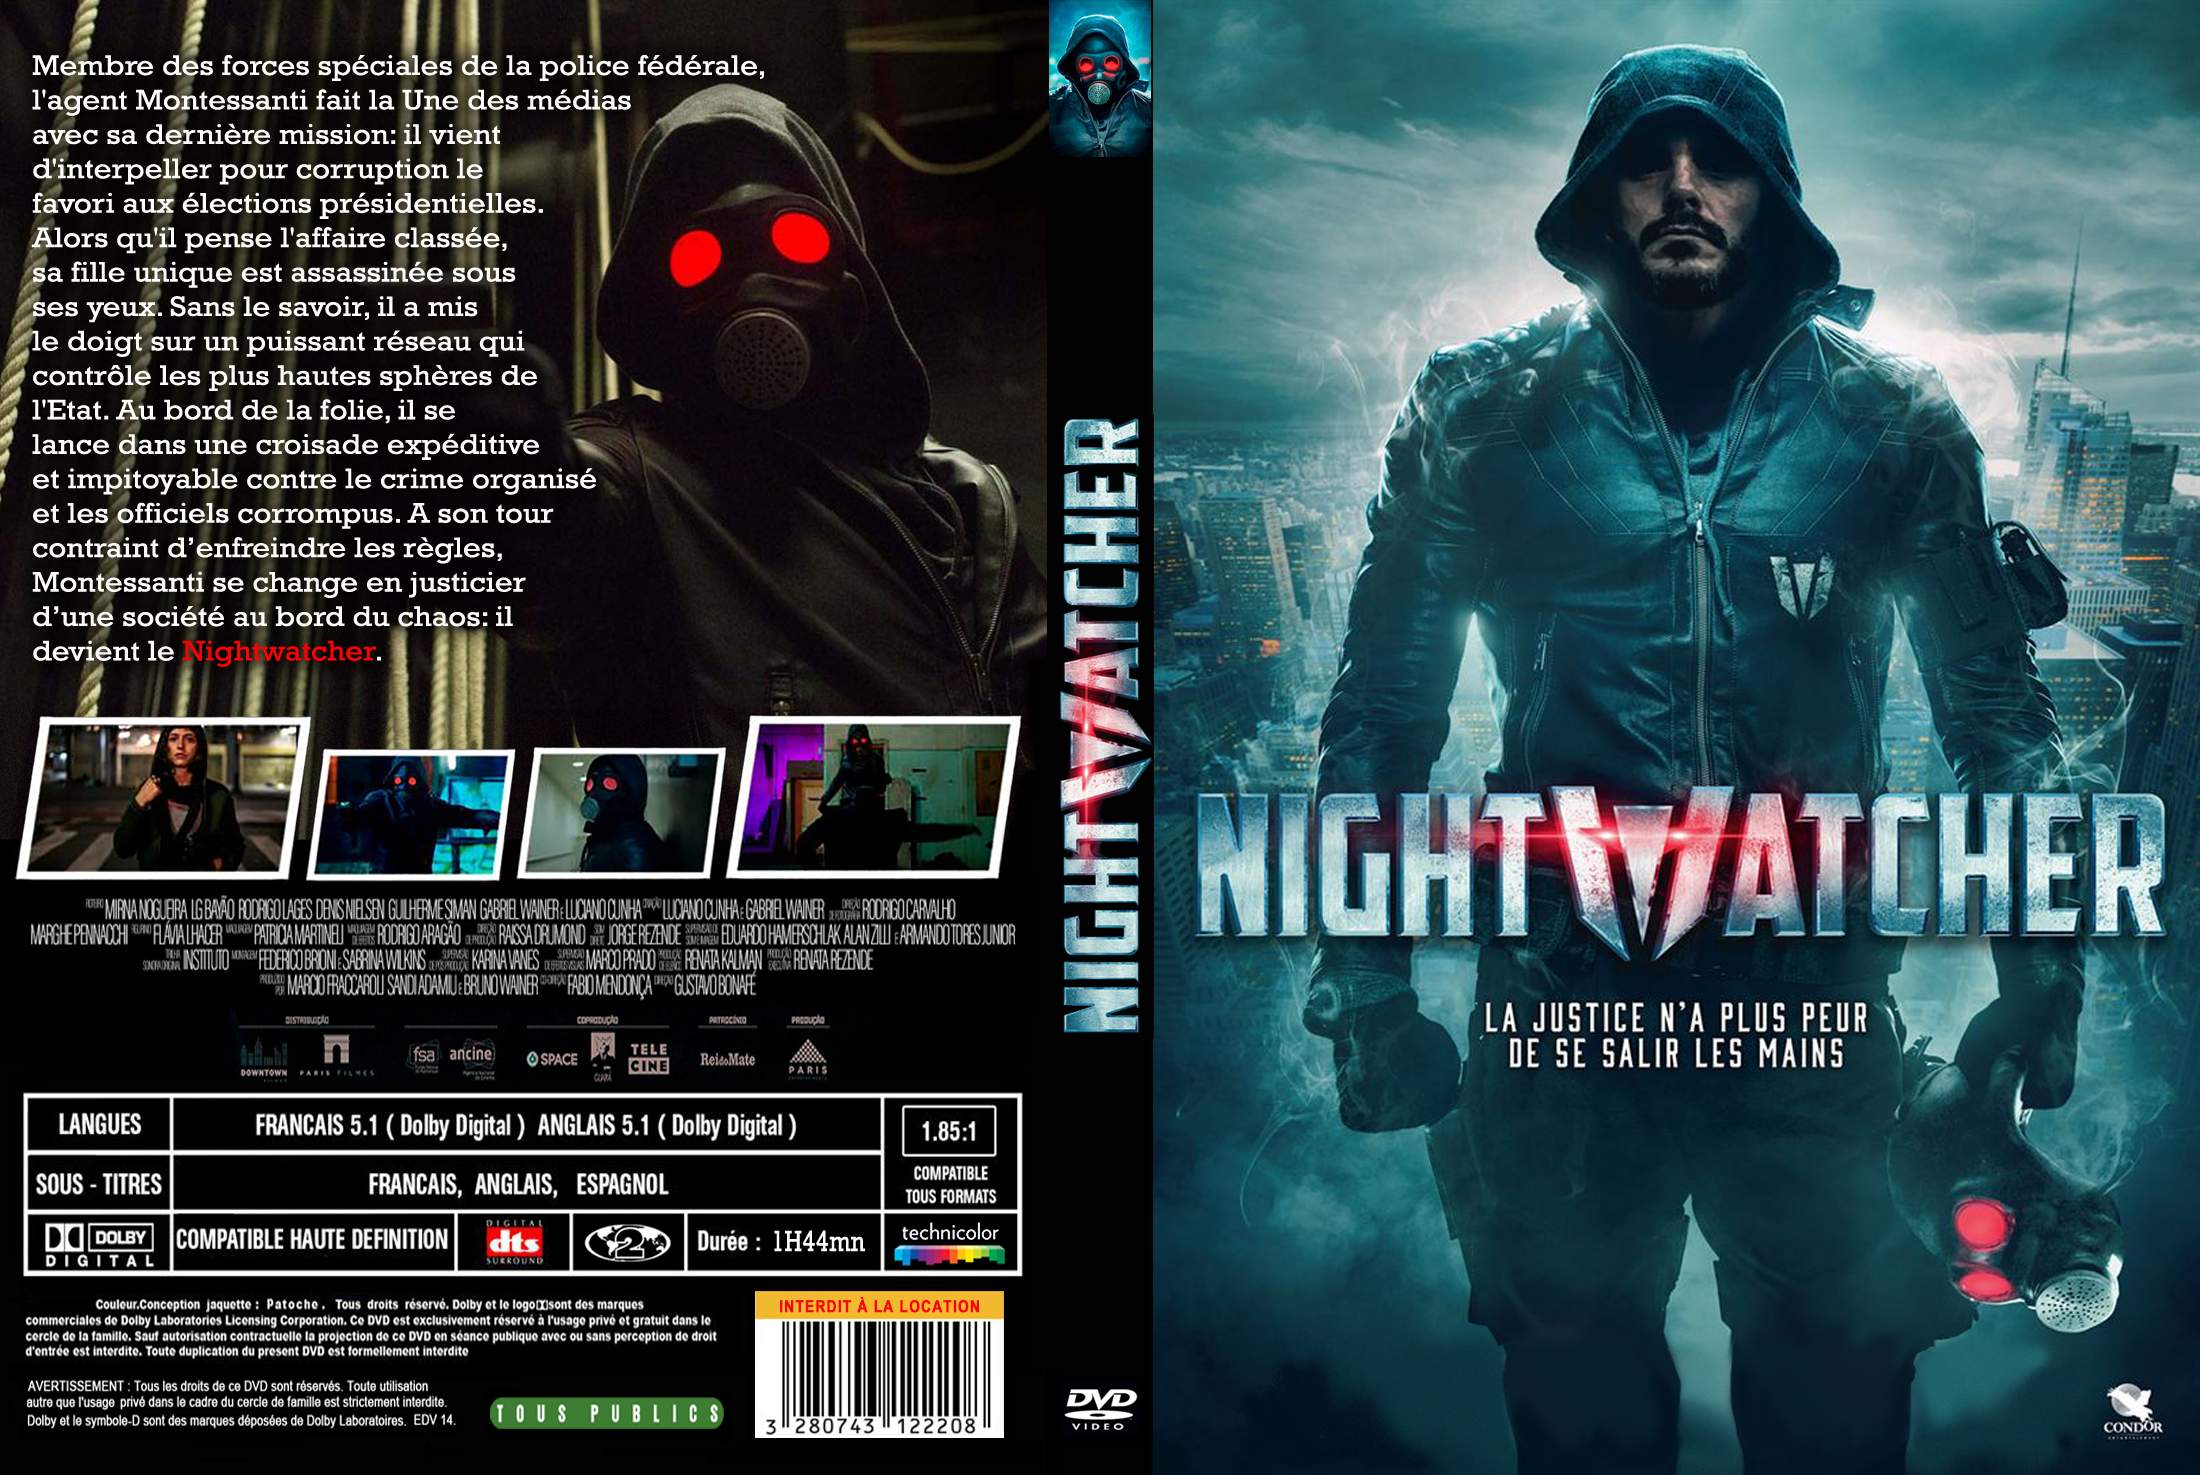 Jaquette DVD Nightwatcher custom